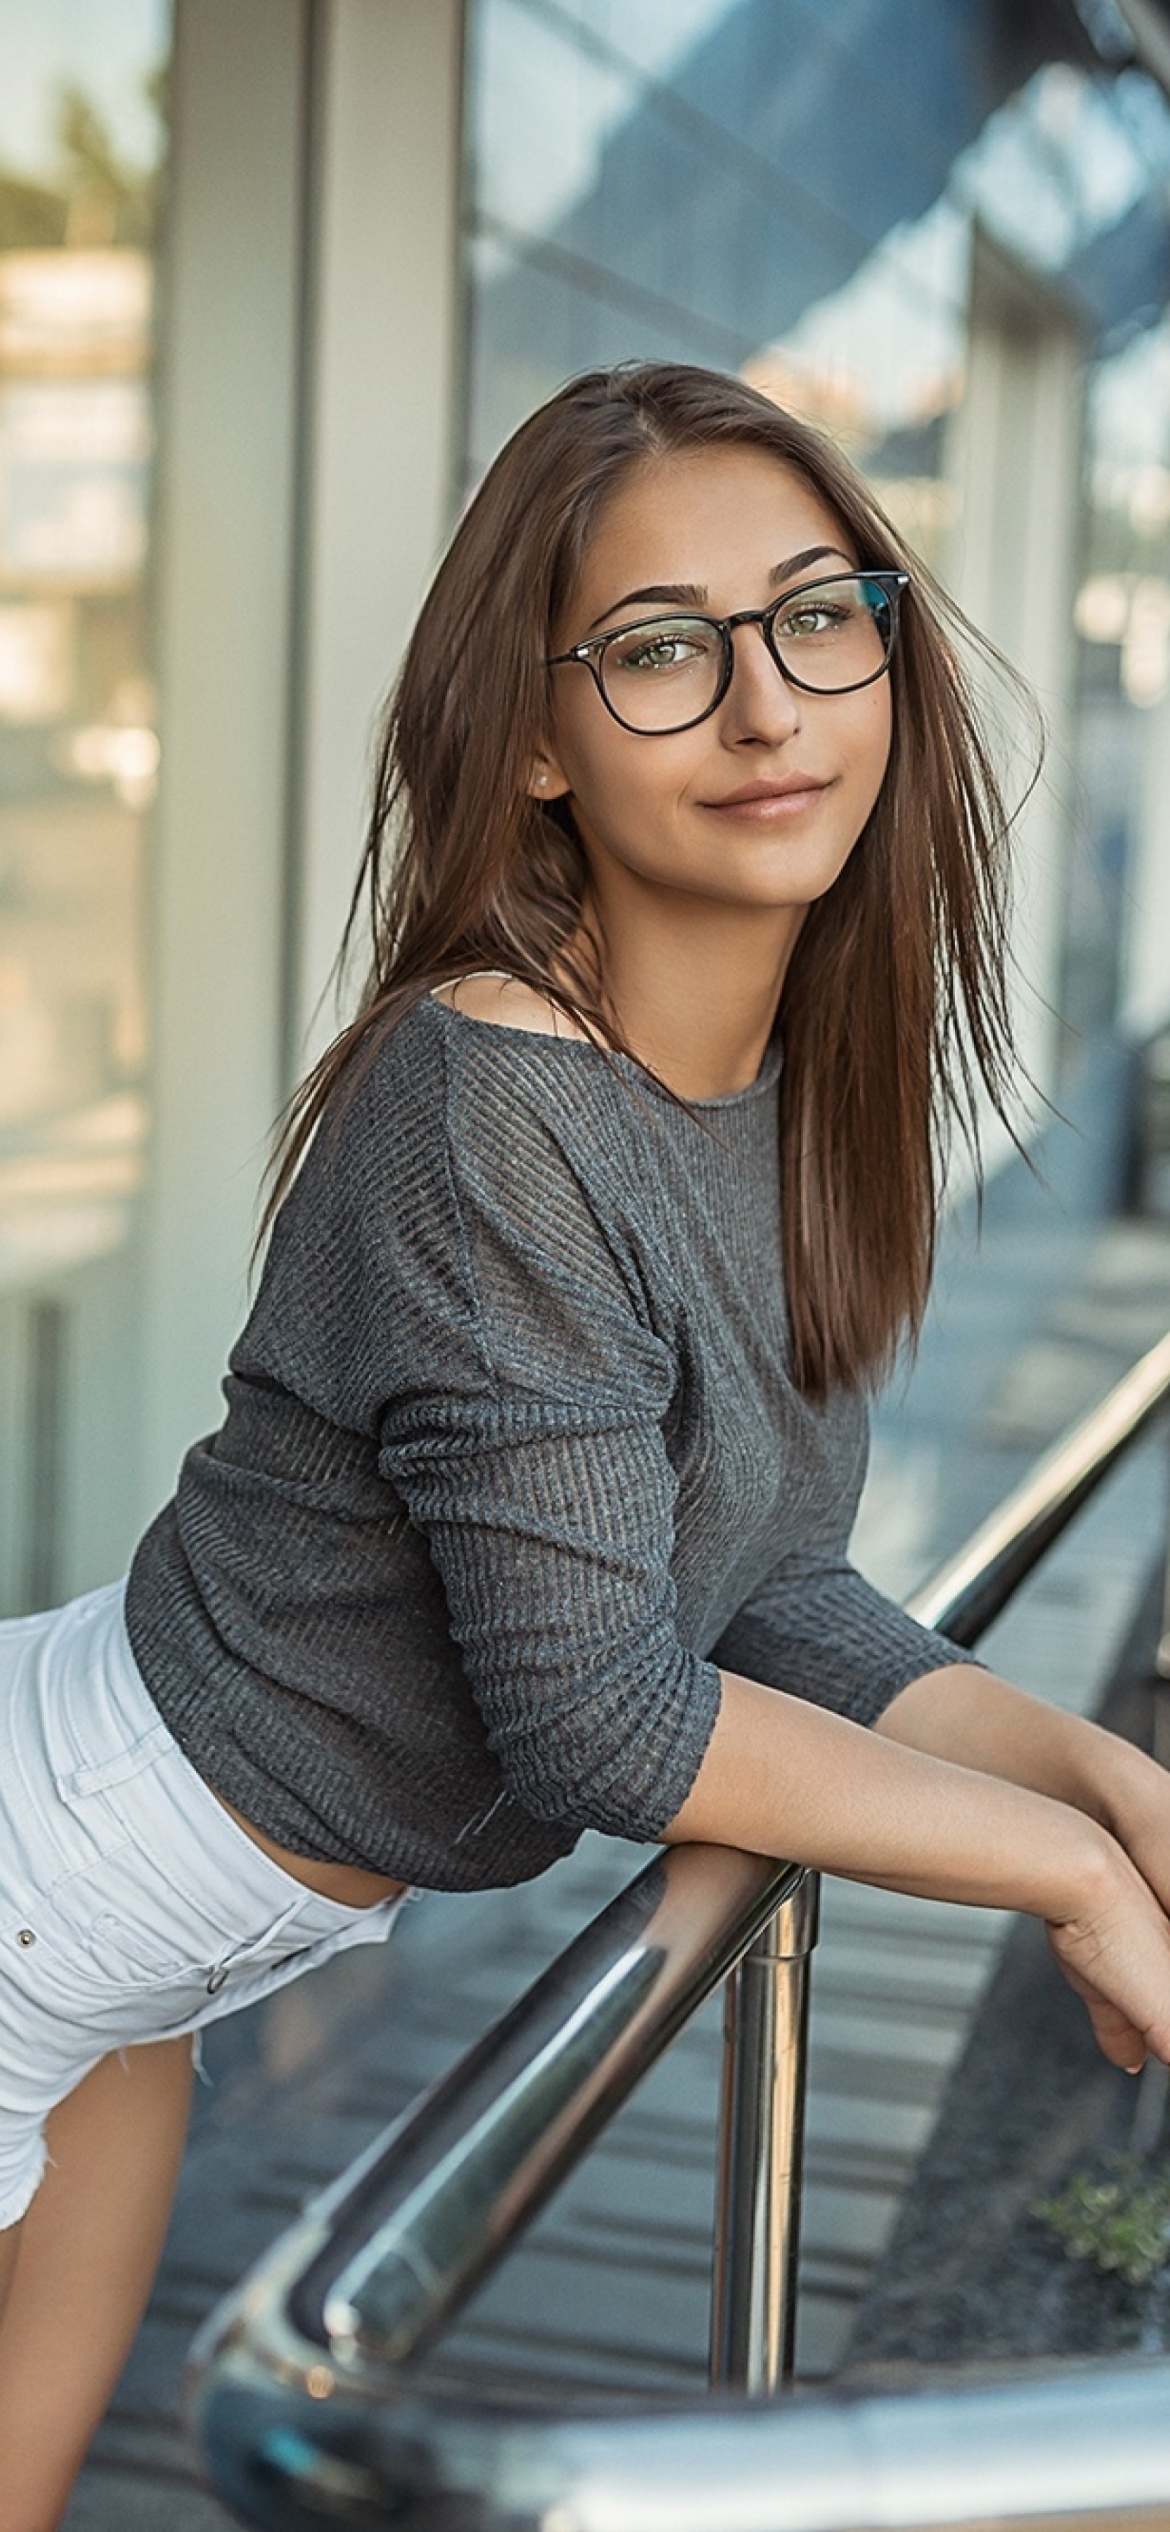 Das Pretty girl in glasses Wallpaper 1170x2532